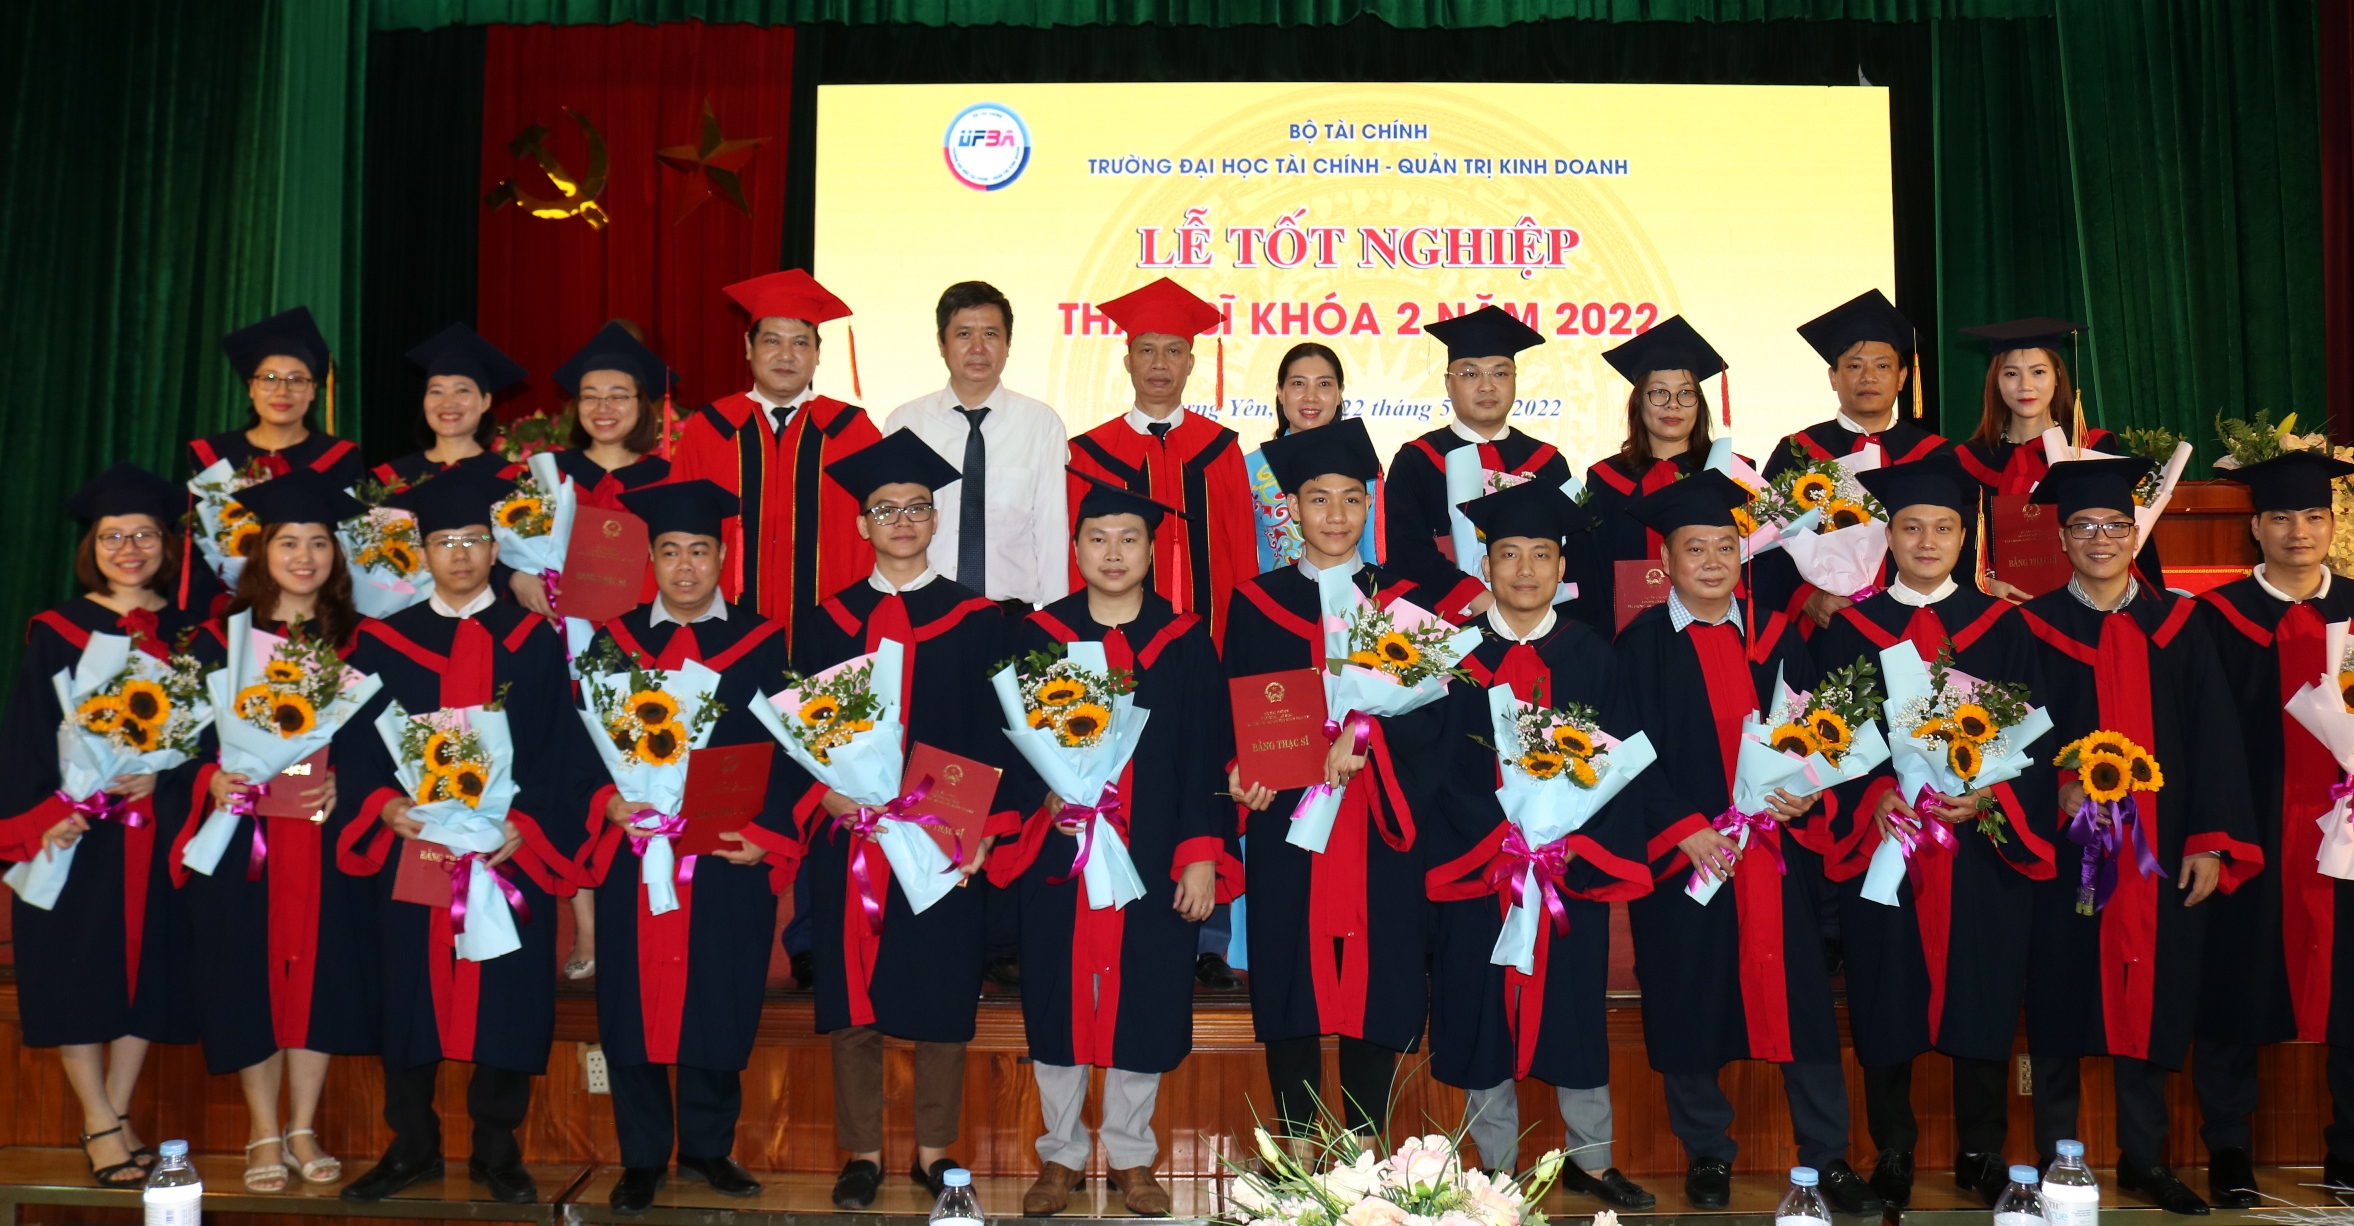 Lễ tốt nghiệp và trao bằng Thạc sỹ khóa 2 và Đại học Liên thông khóa 8 năm 2022